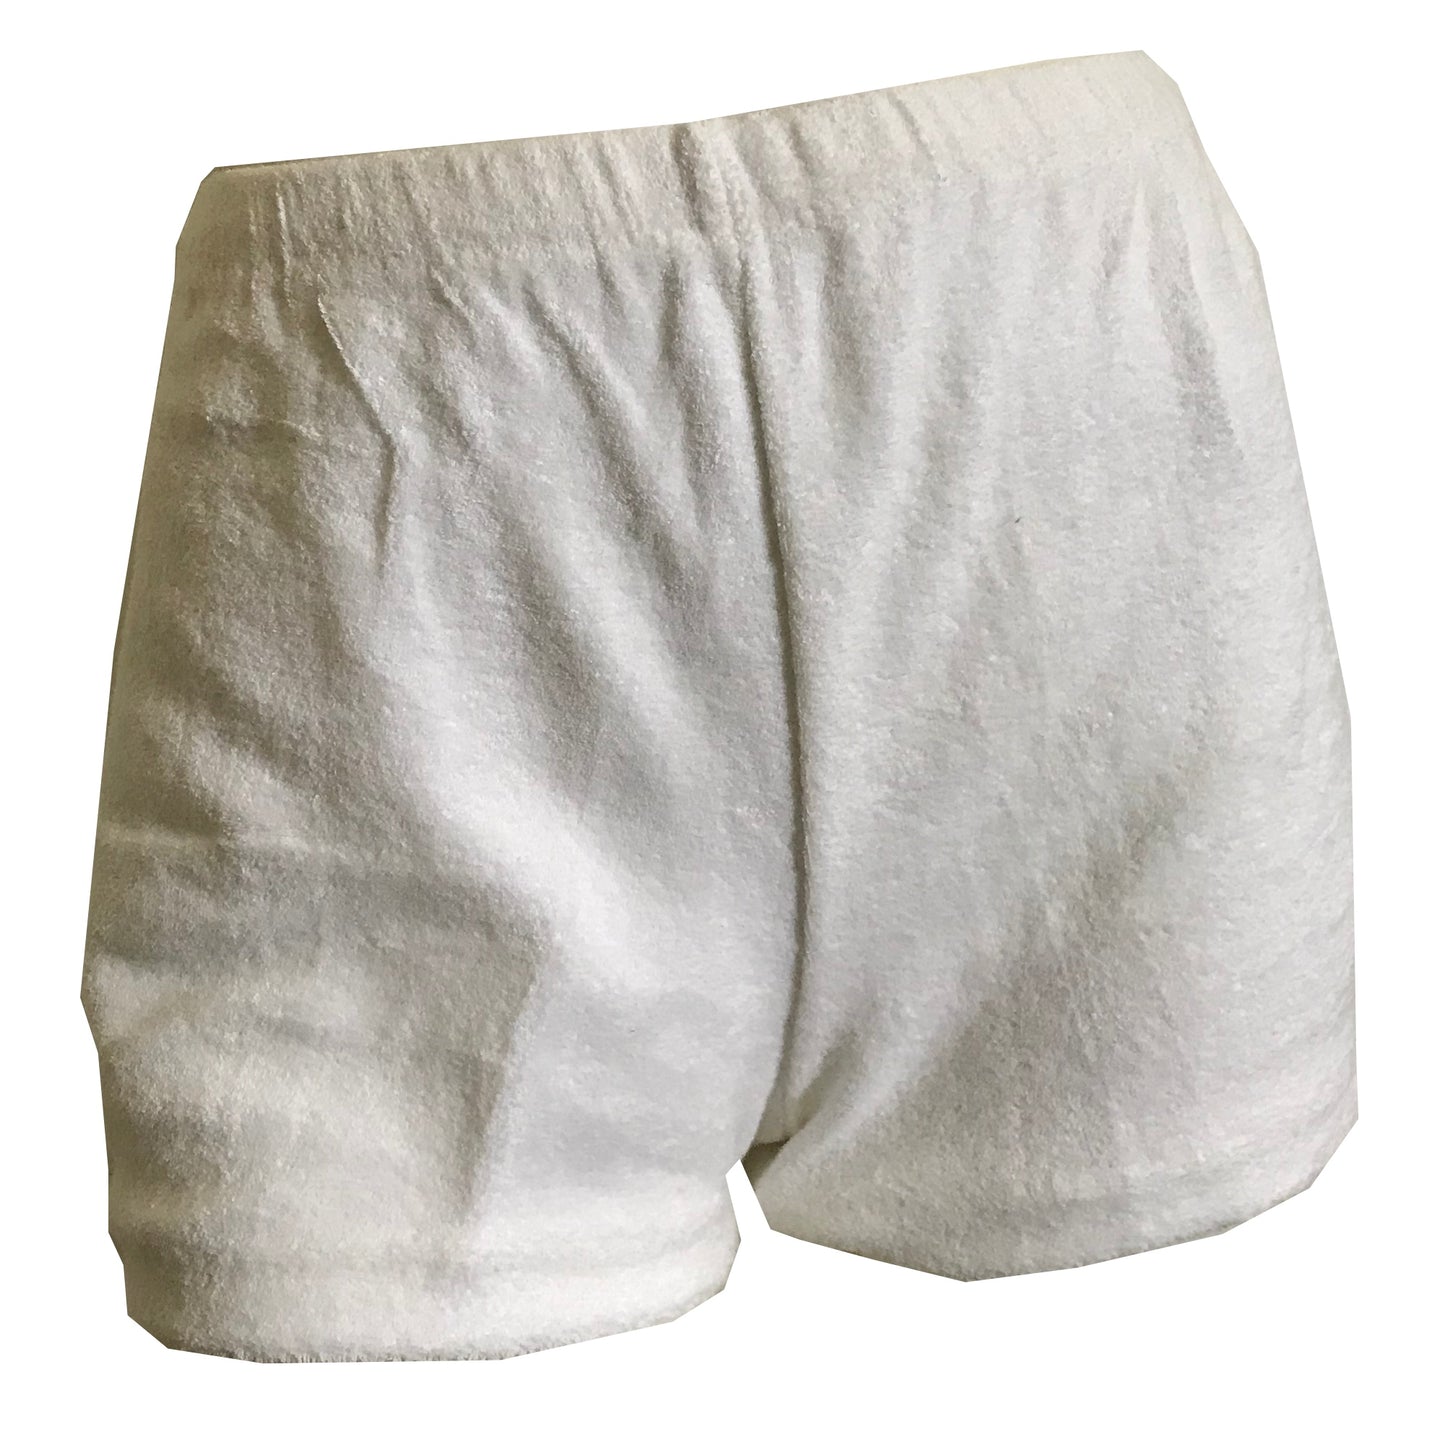 White Cotton Terry Cloth Short Shorts circa 1970s